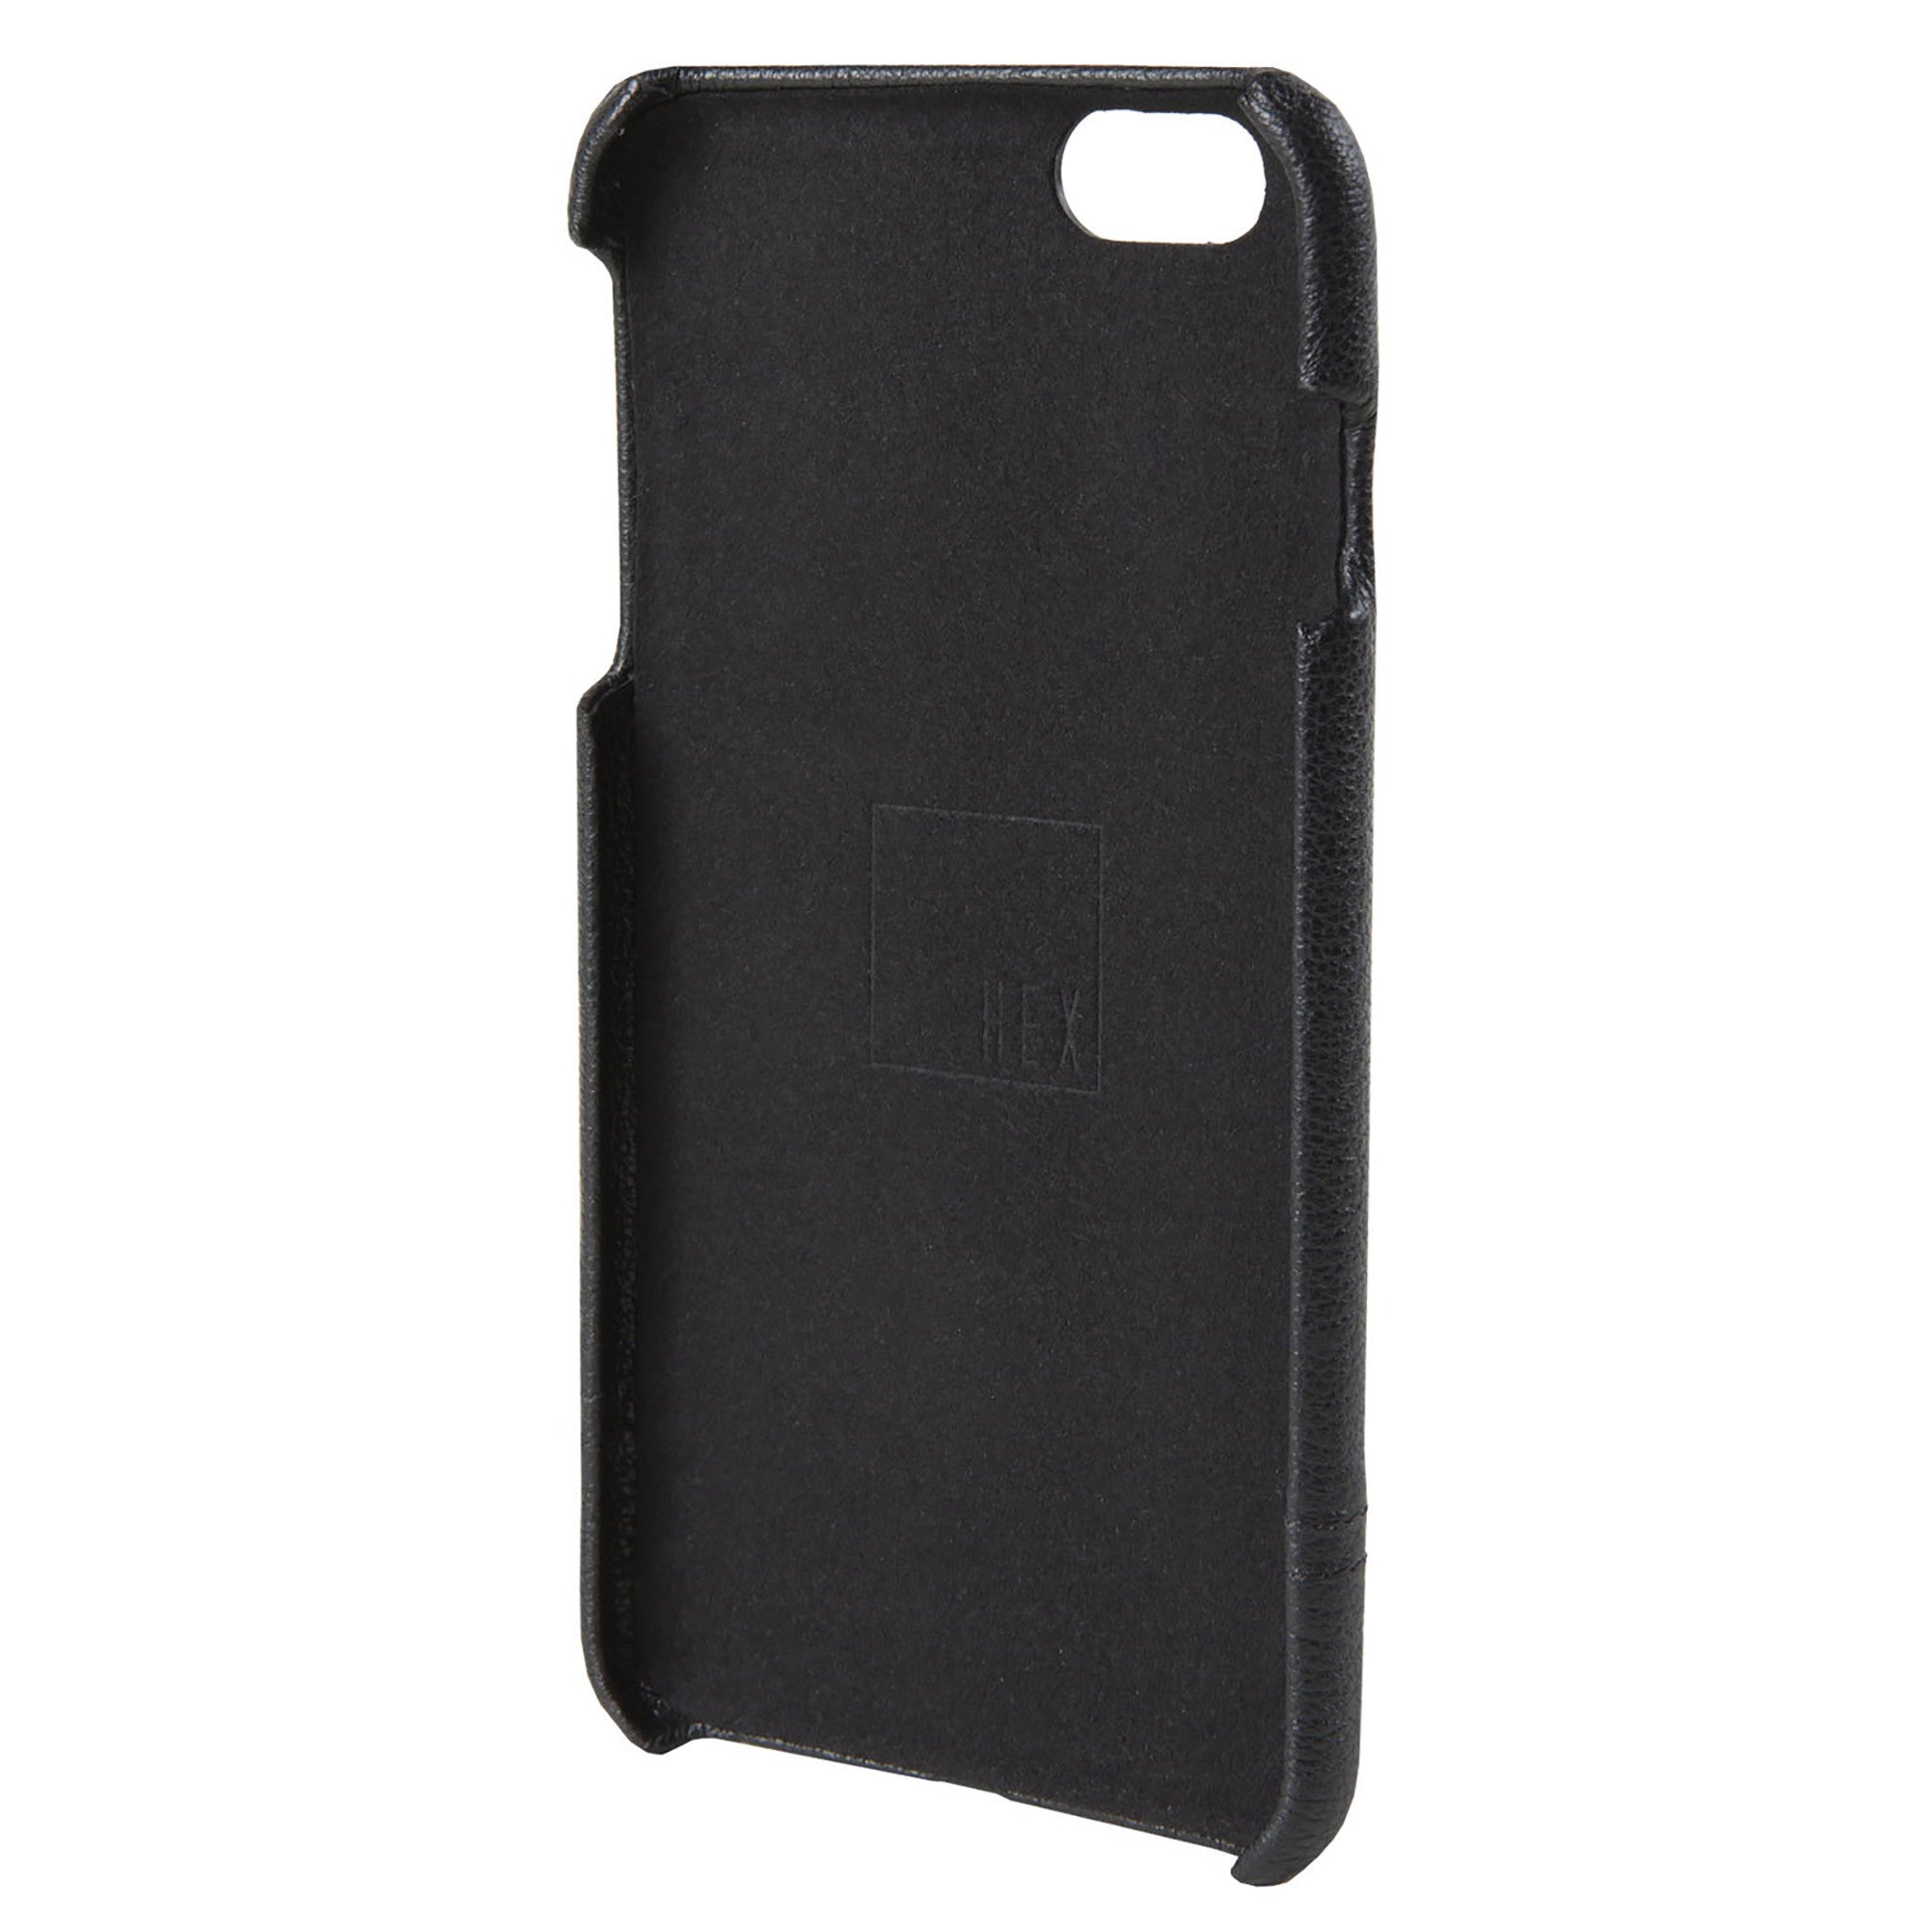 Black Leather Focus Case for iPhone 6s Plus - HEX